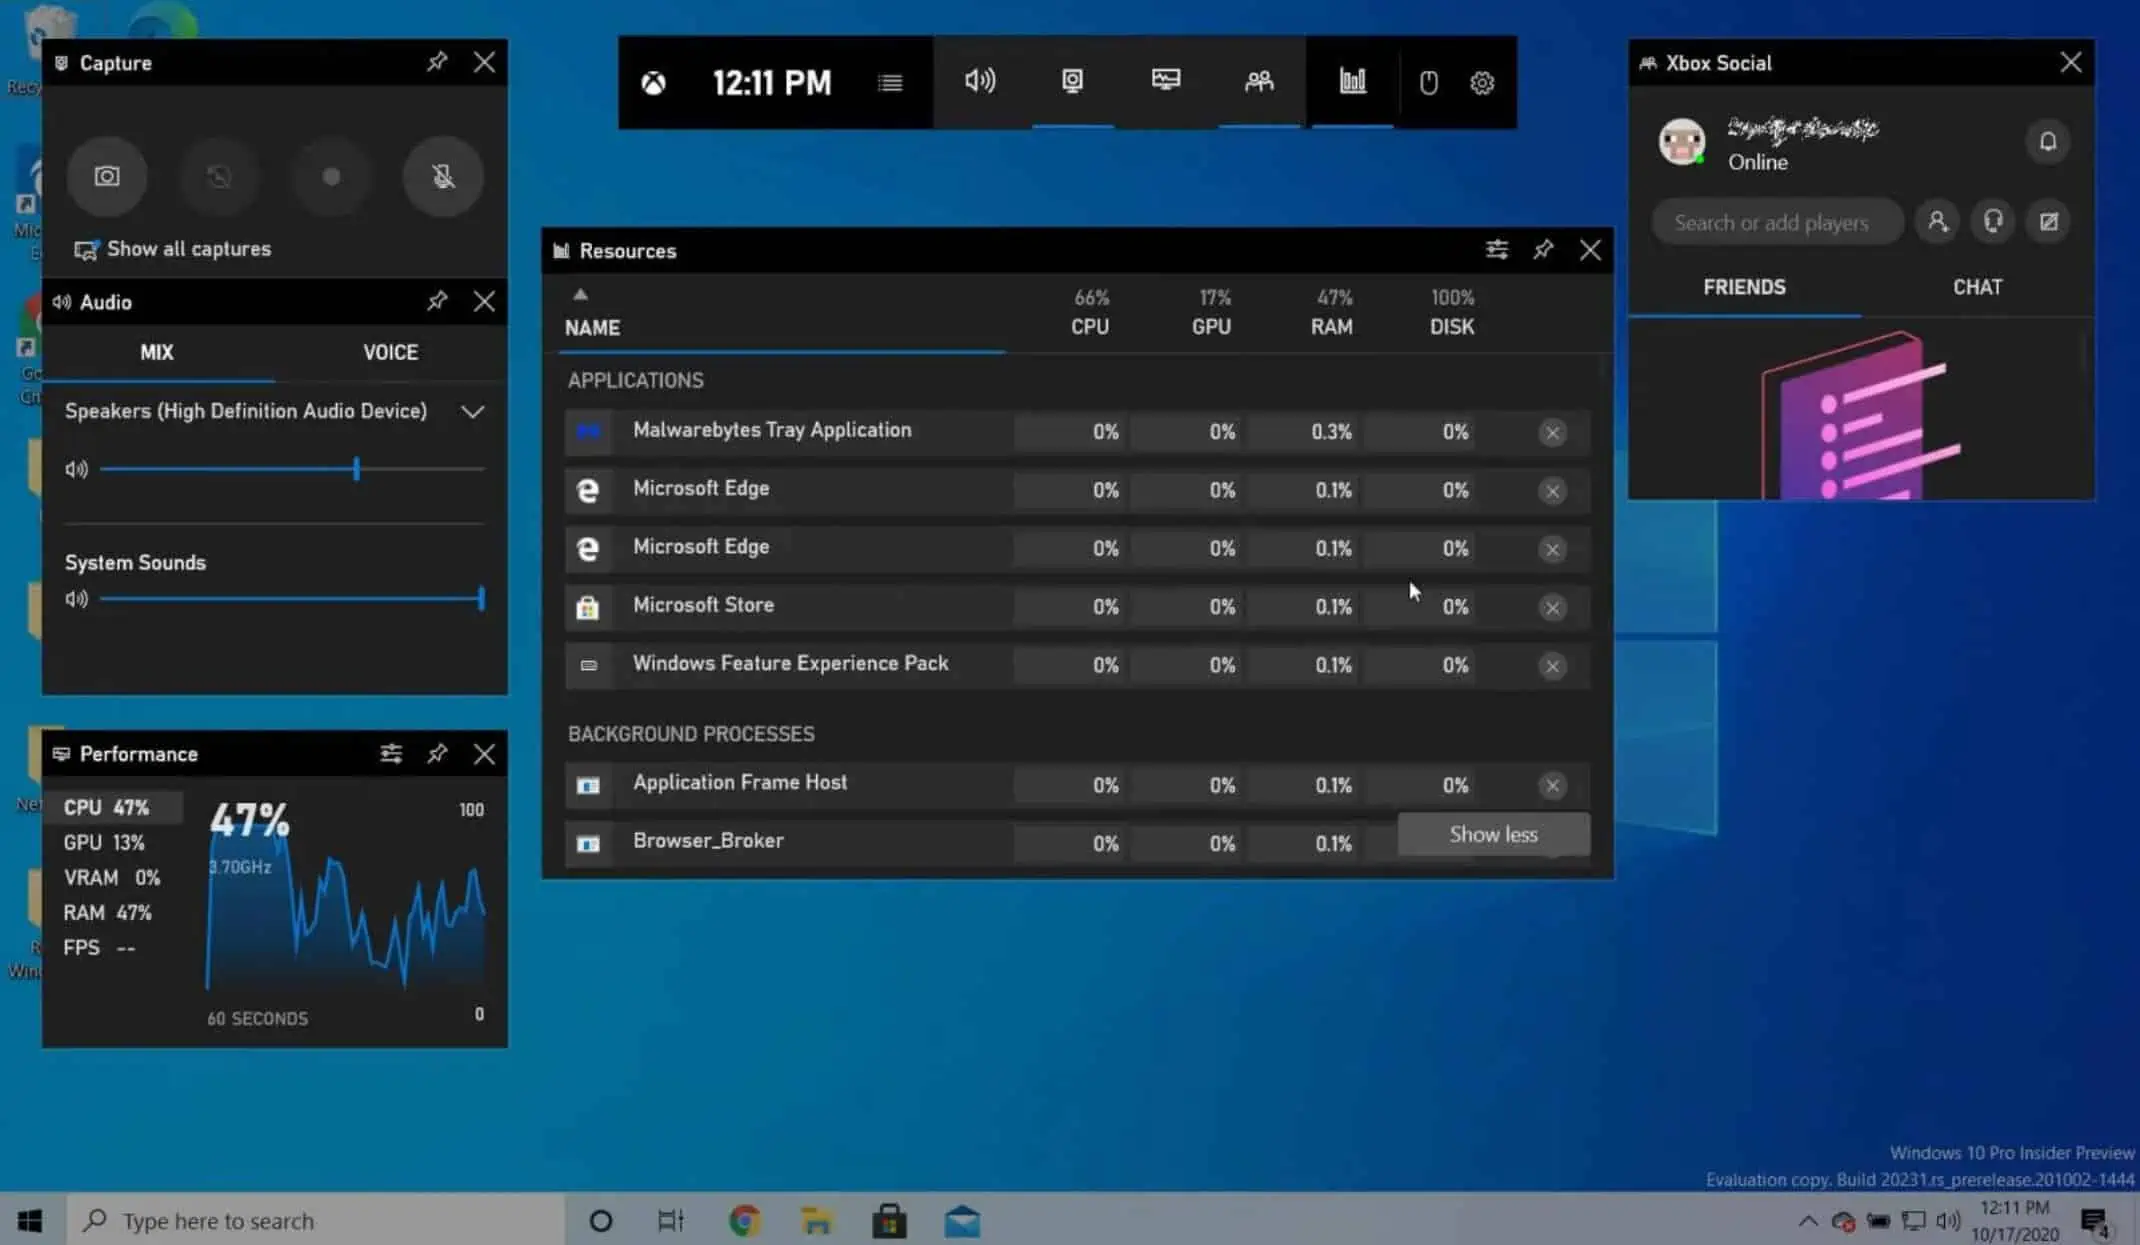 windows 10 desktop widgets